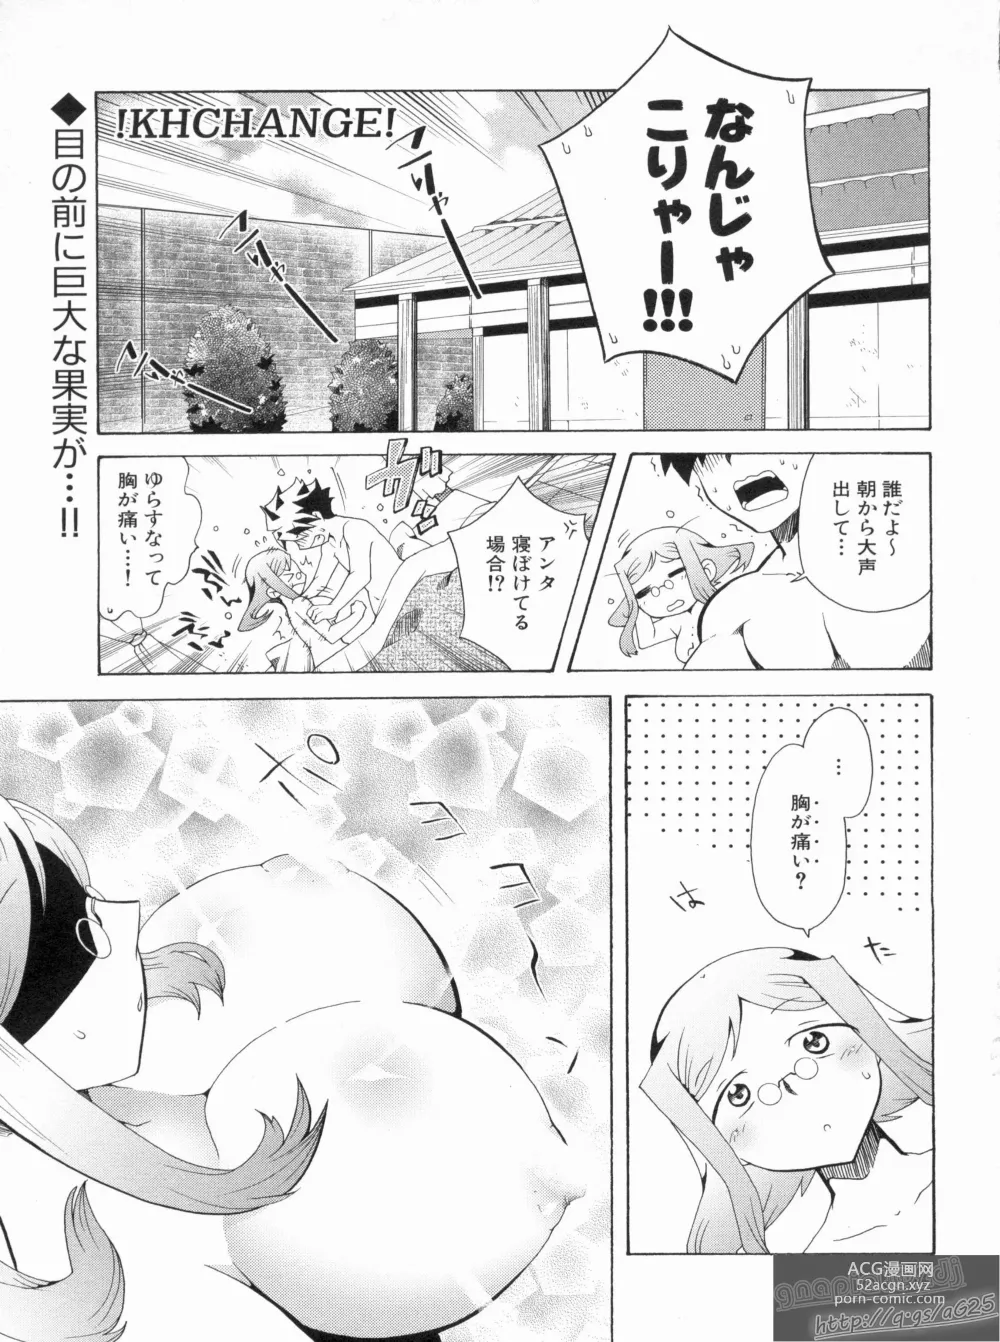 Page 7 of manga Shin Koihime Musou Gaishi Saiten VOL.2